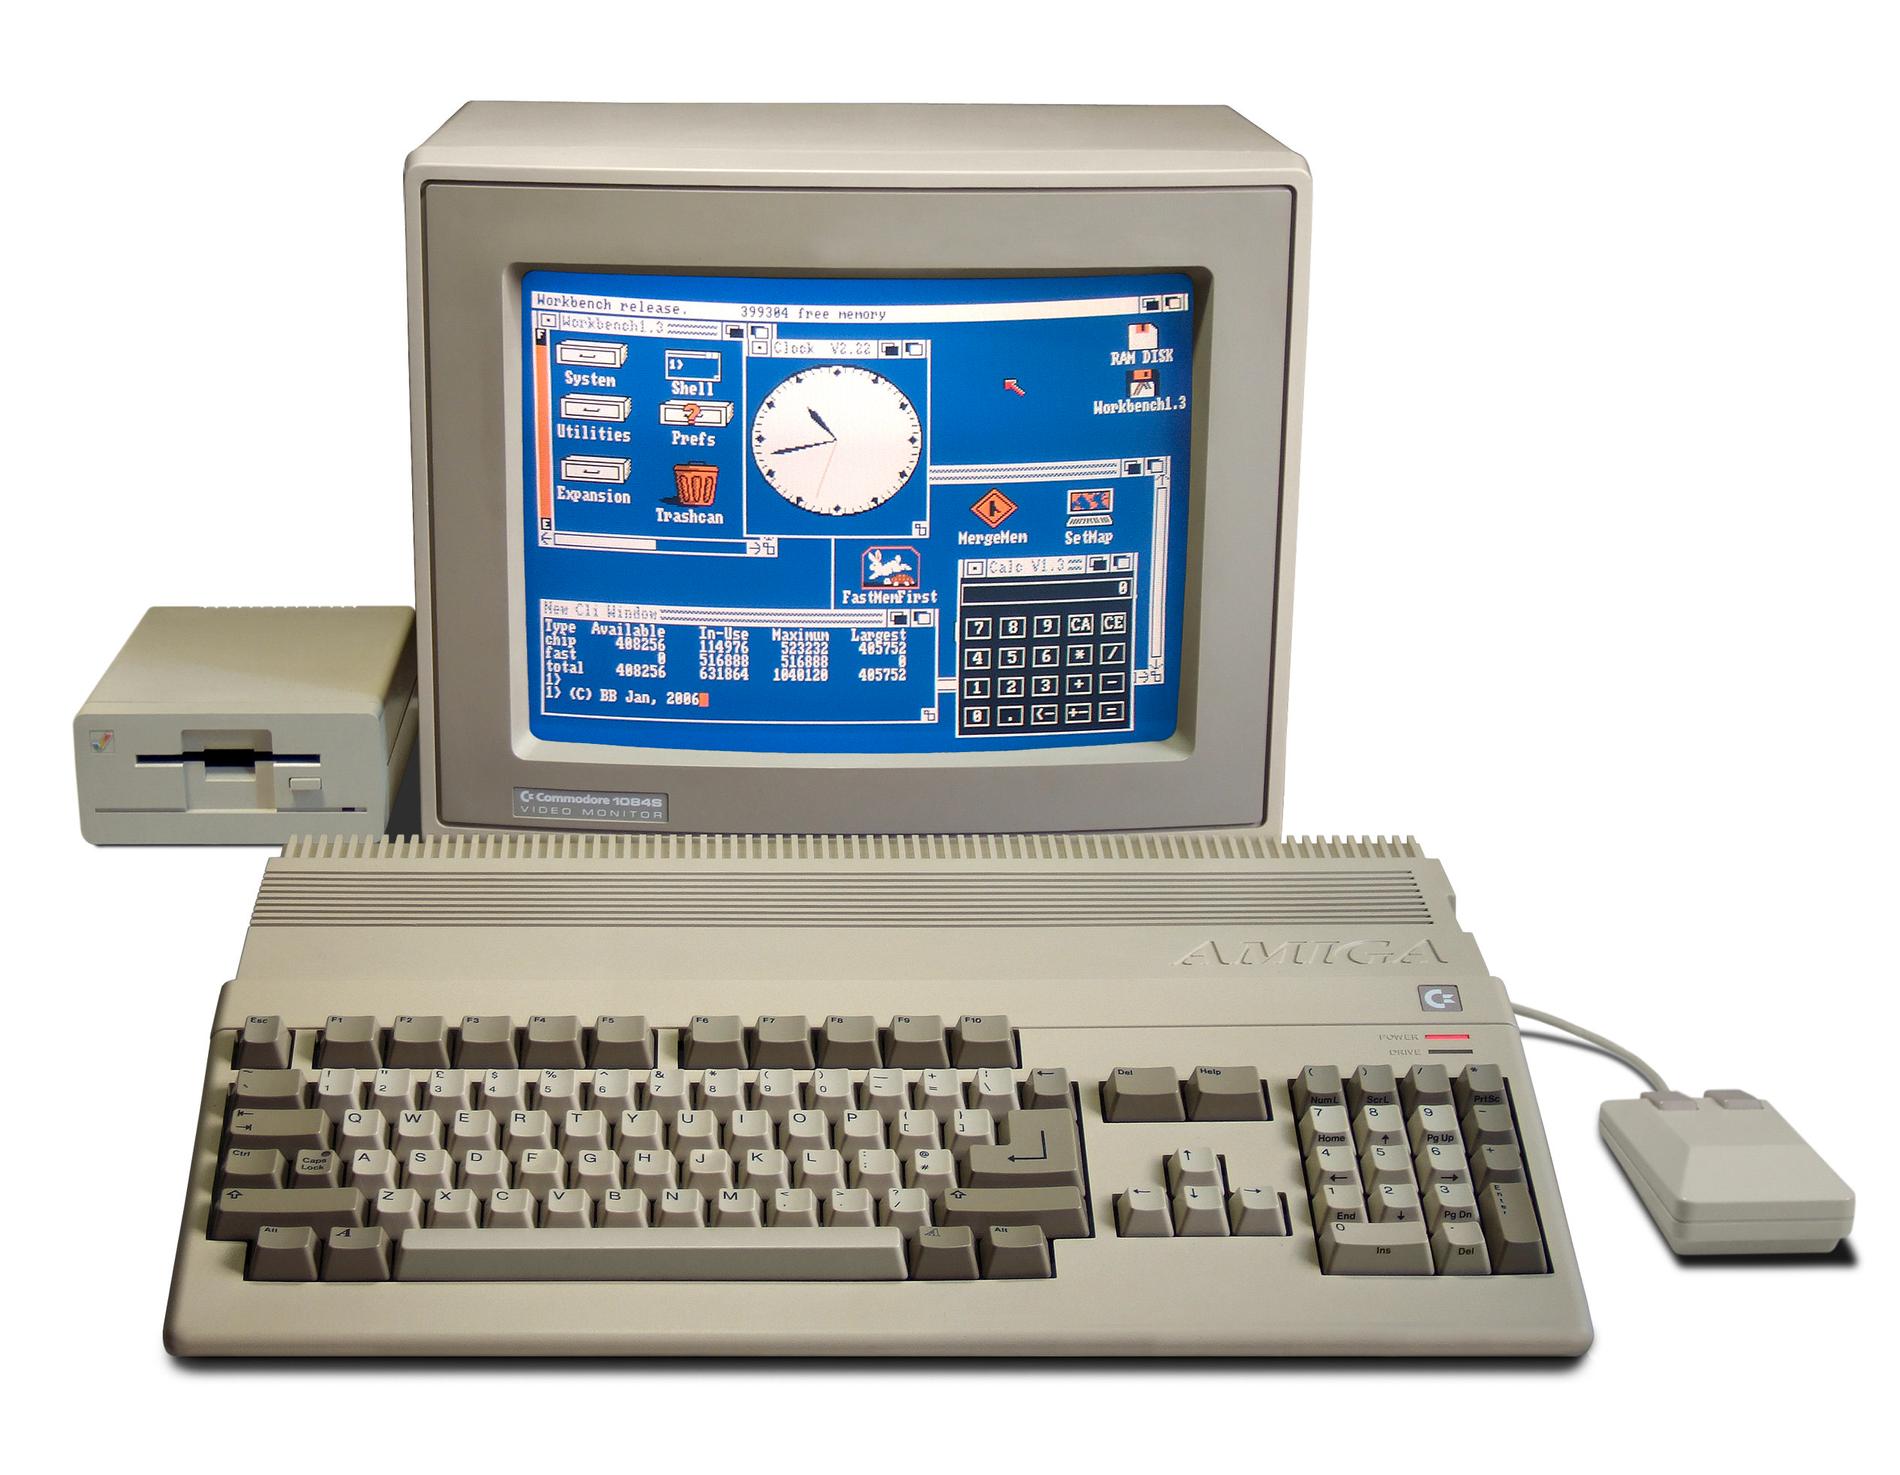 Amiga 500-datorn får en nostalgisk tillbakablick.